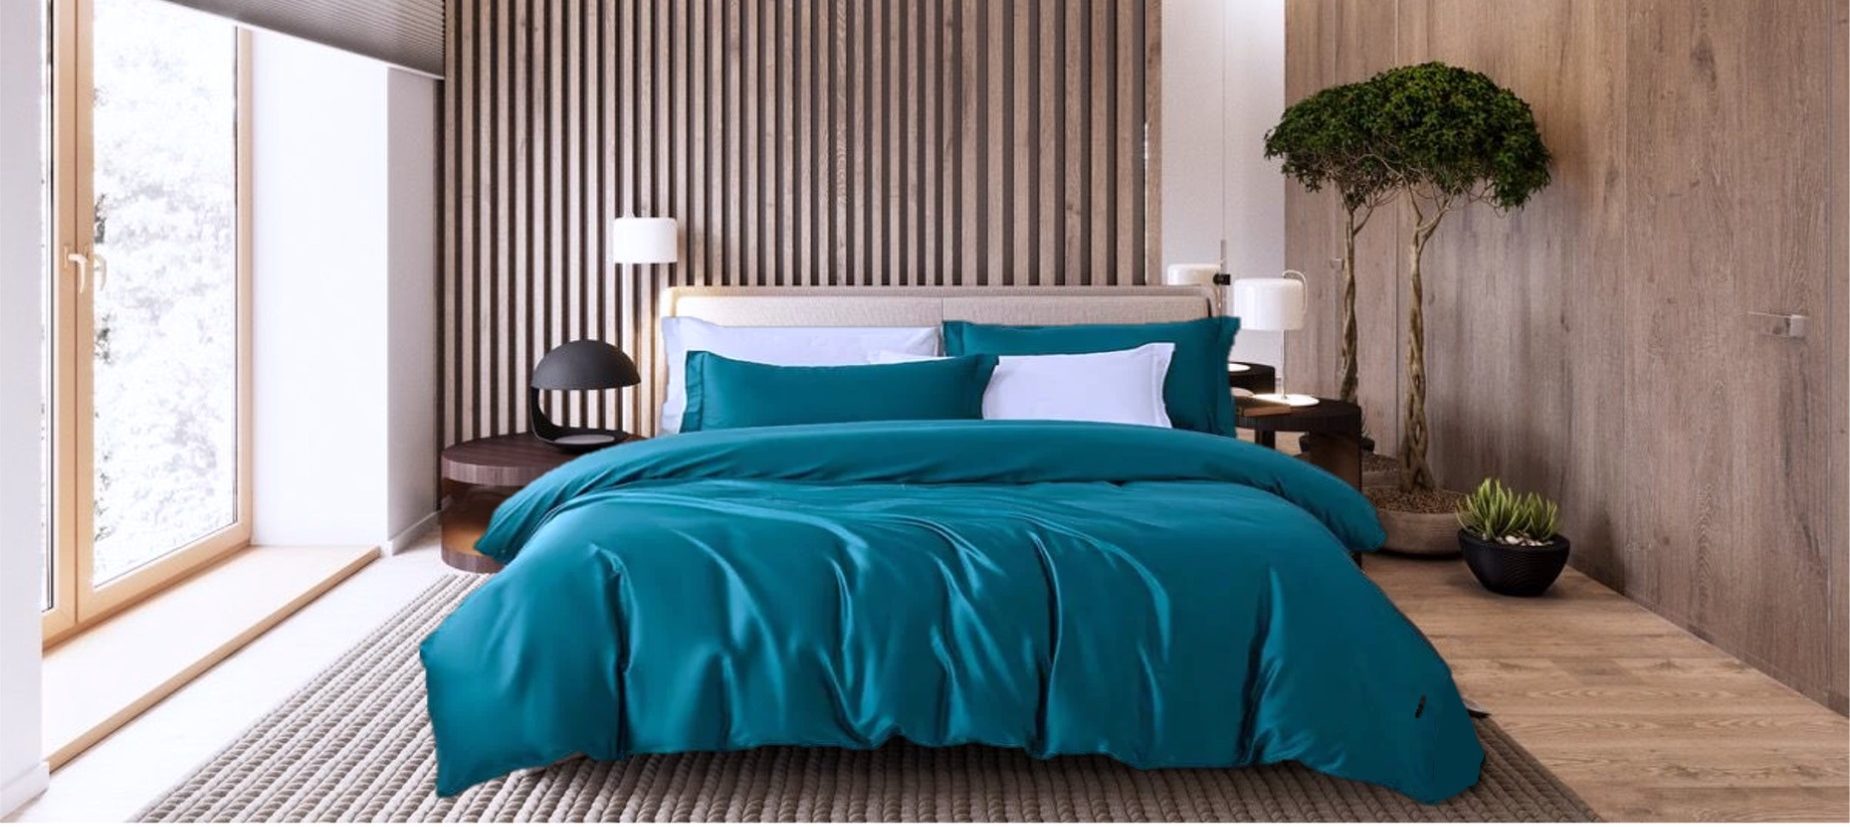 Petrol bambus sengetøy oppredd seng eik spilevegg